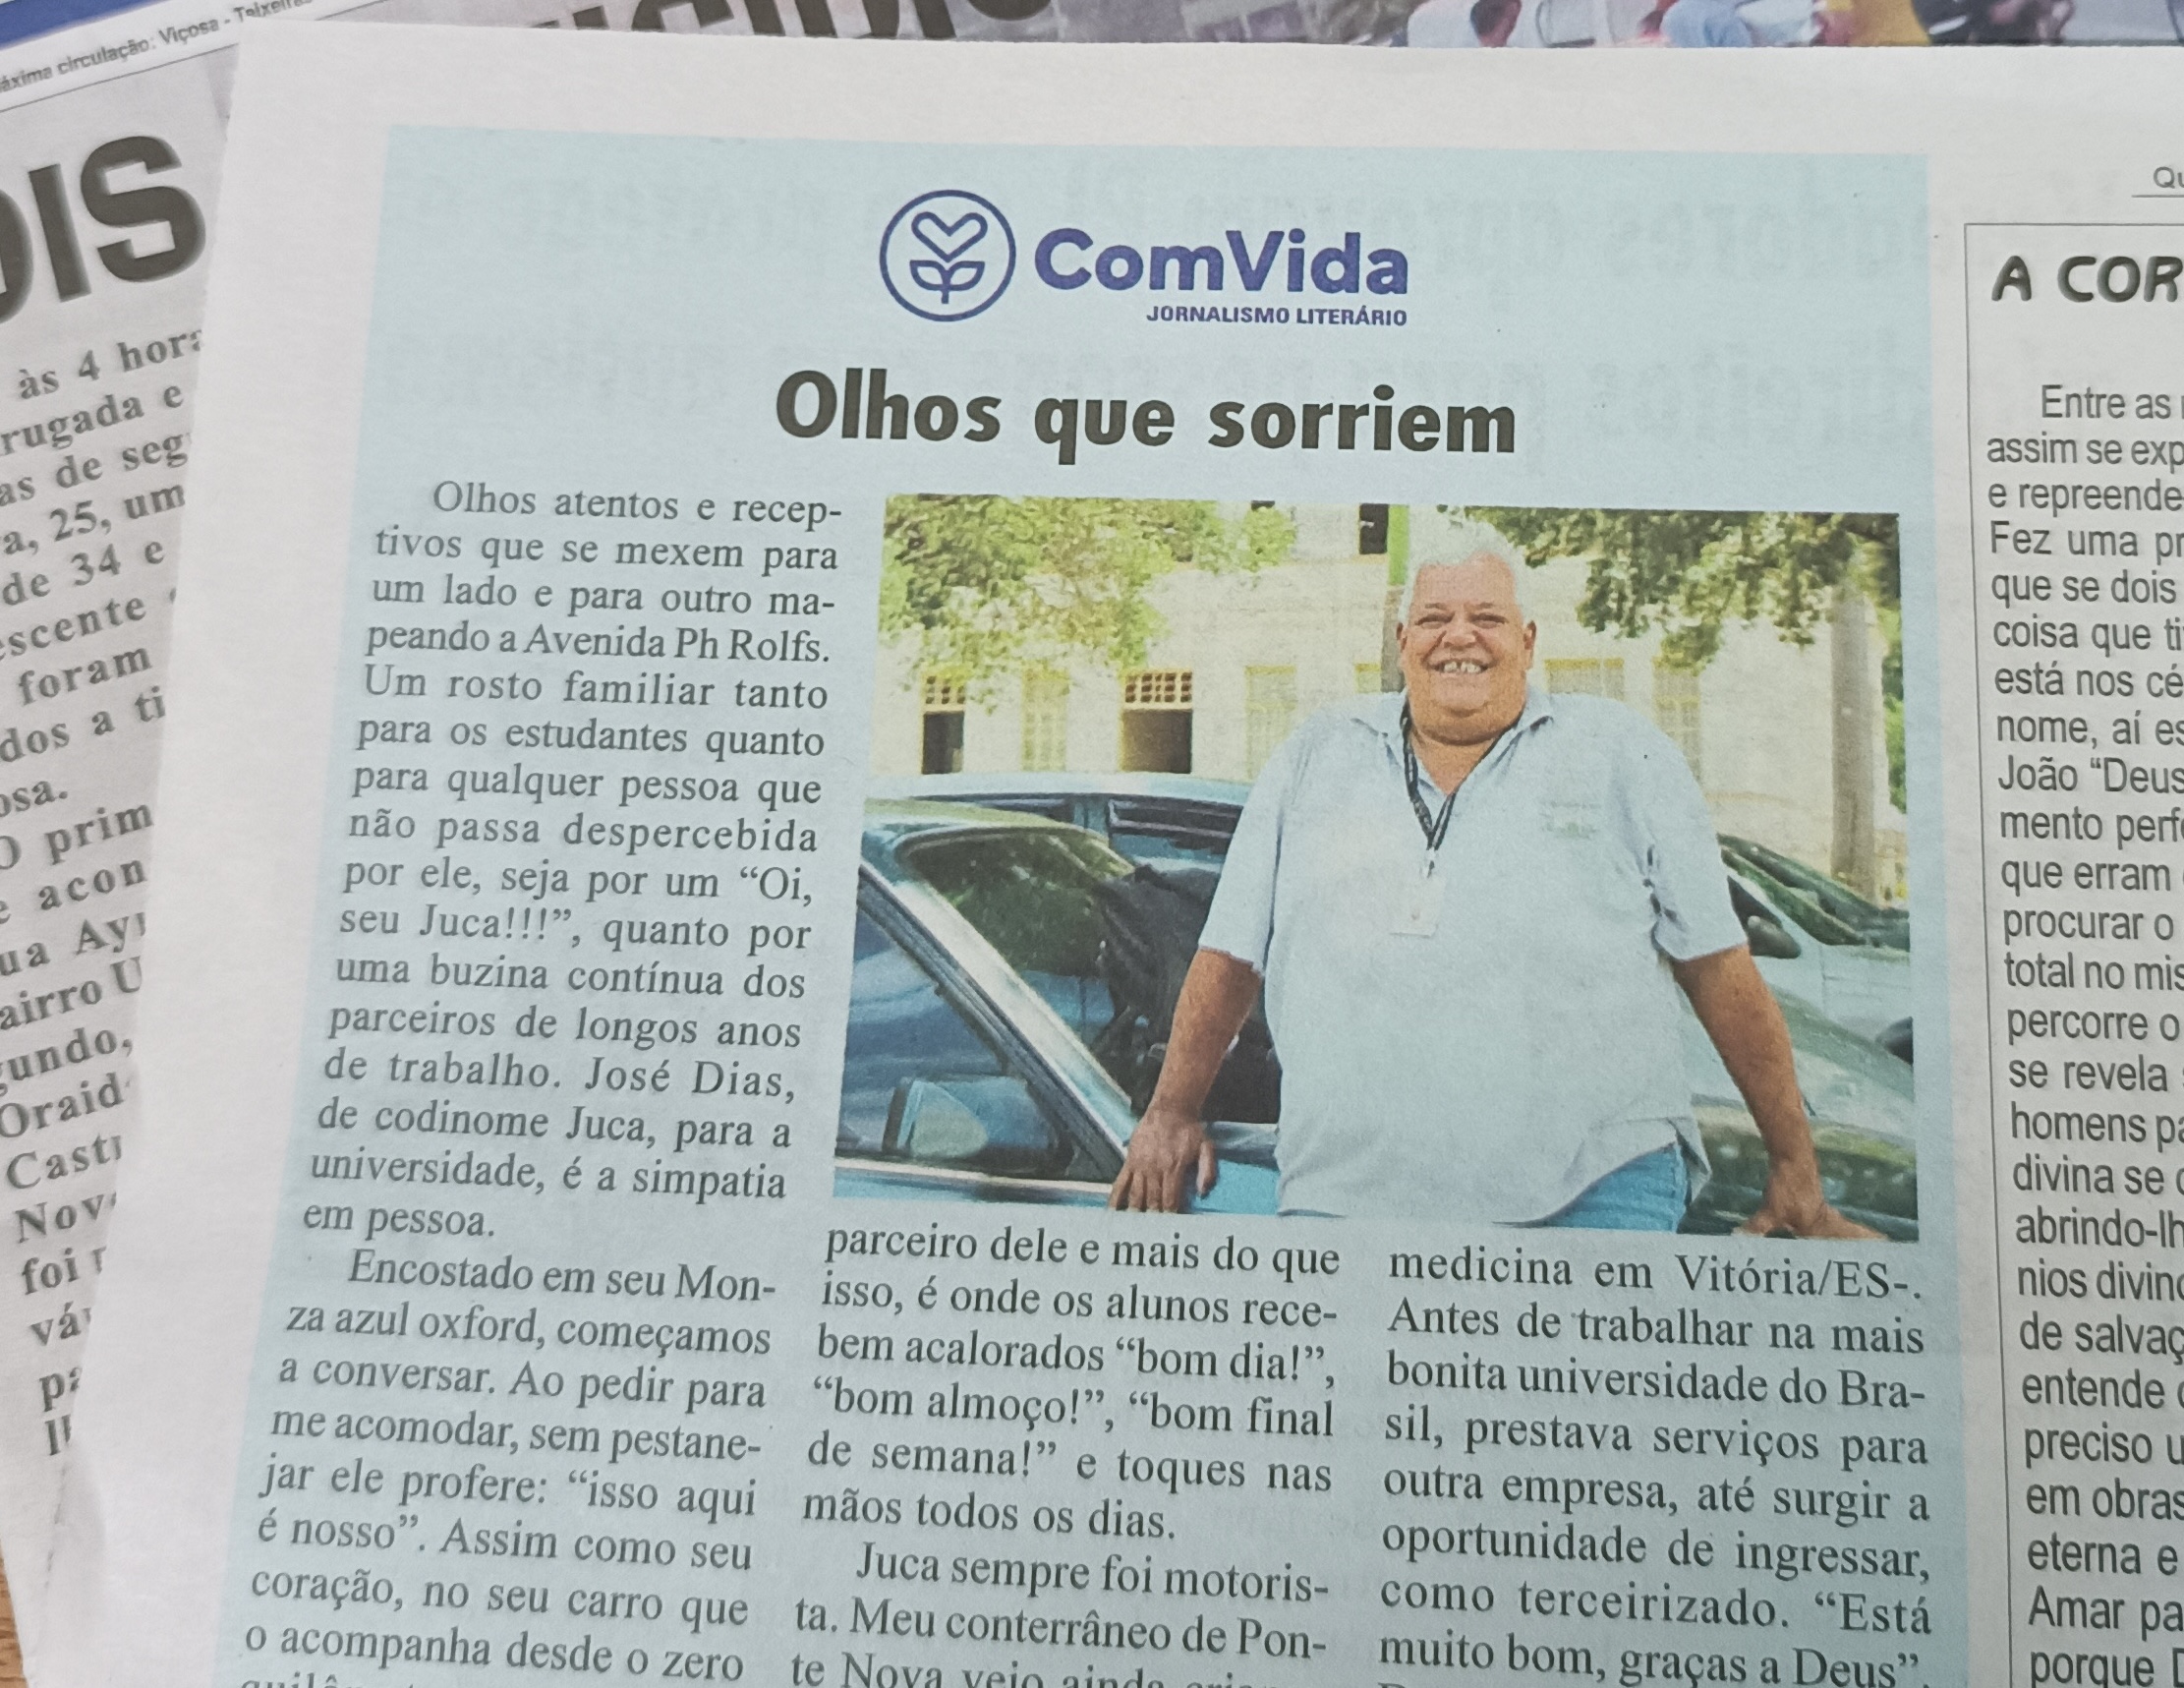 Foto de página de jornal, mostrando seu Juca, senhor idoso de cabelos grisalhos, sorrindo apoiado em um carro. 